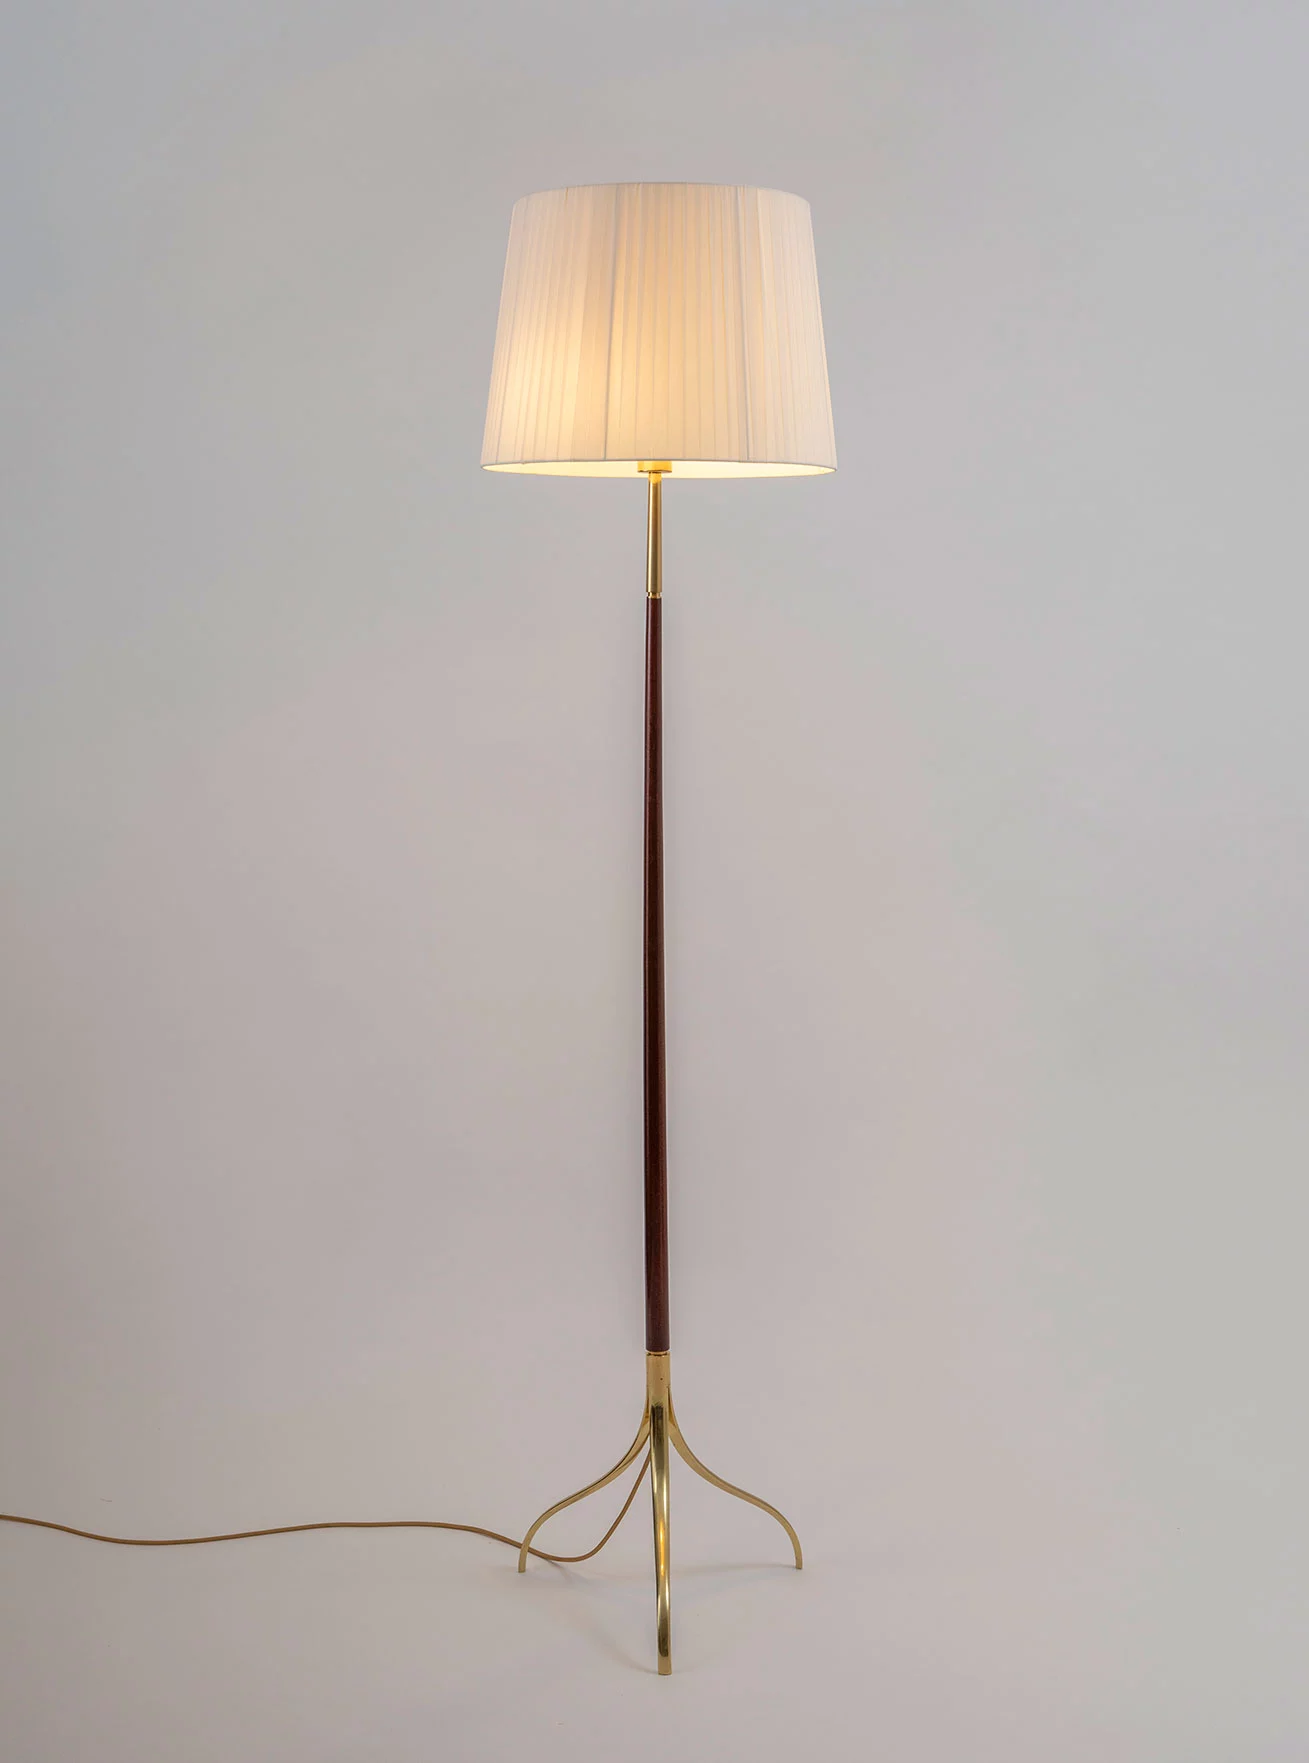 326 - Giuseppe Ostuni - Floor light - Galerie kreo